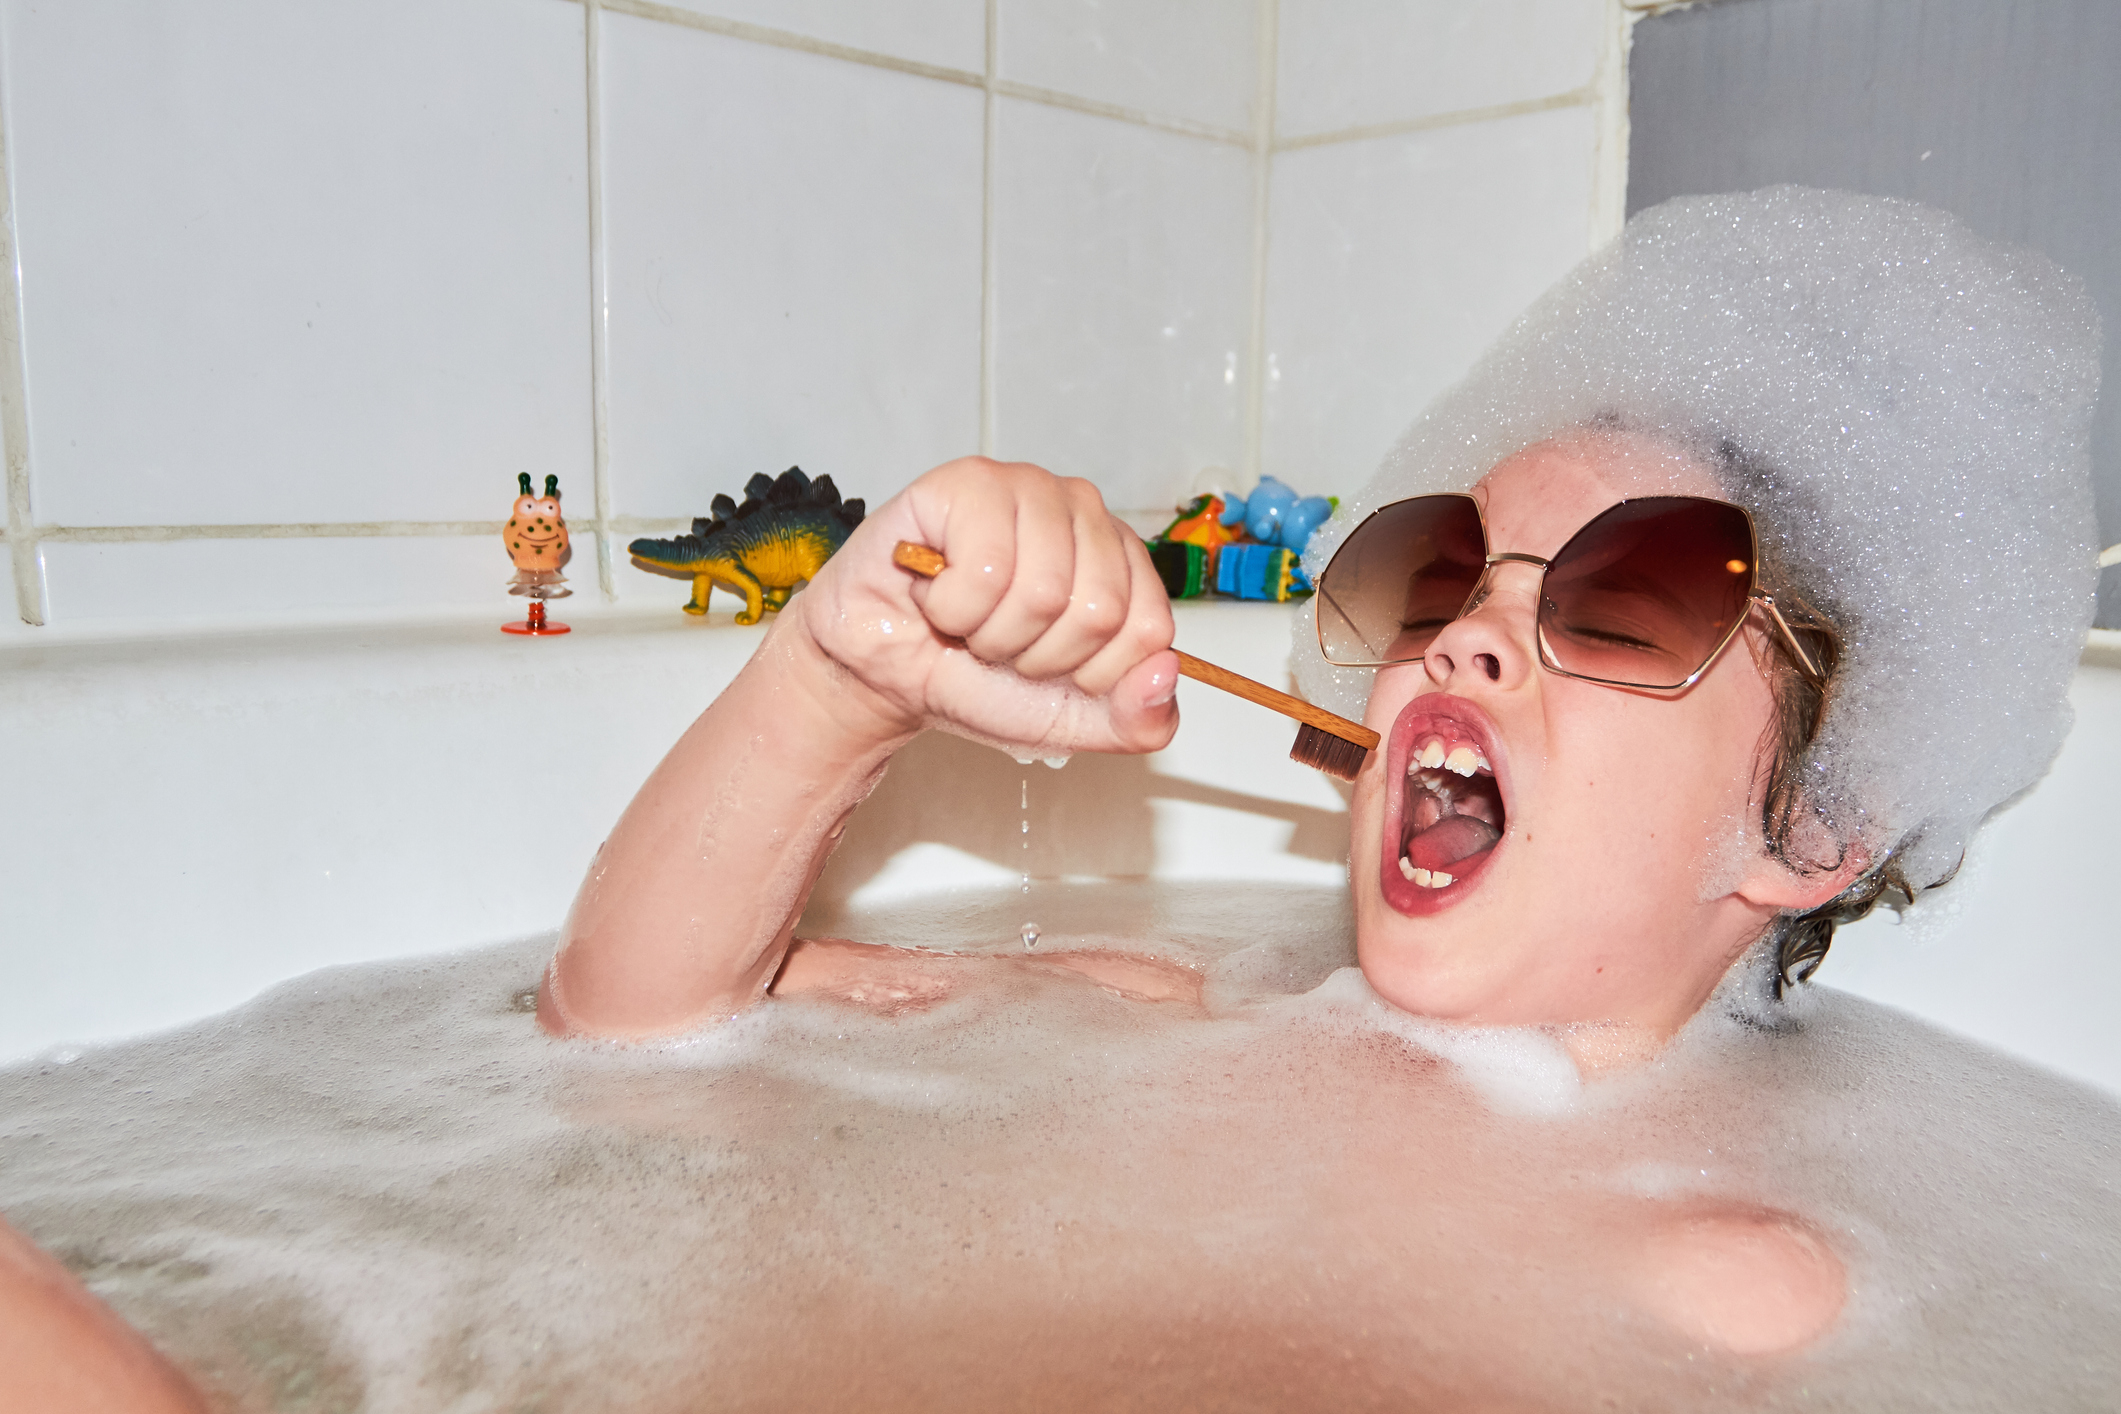 A kid is taking a bubble bath